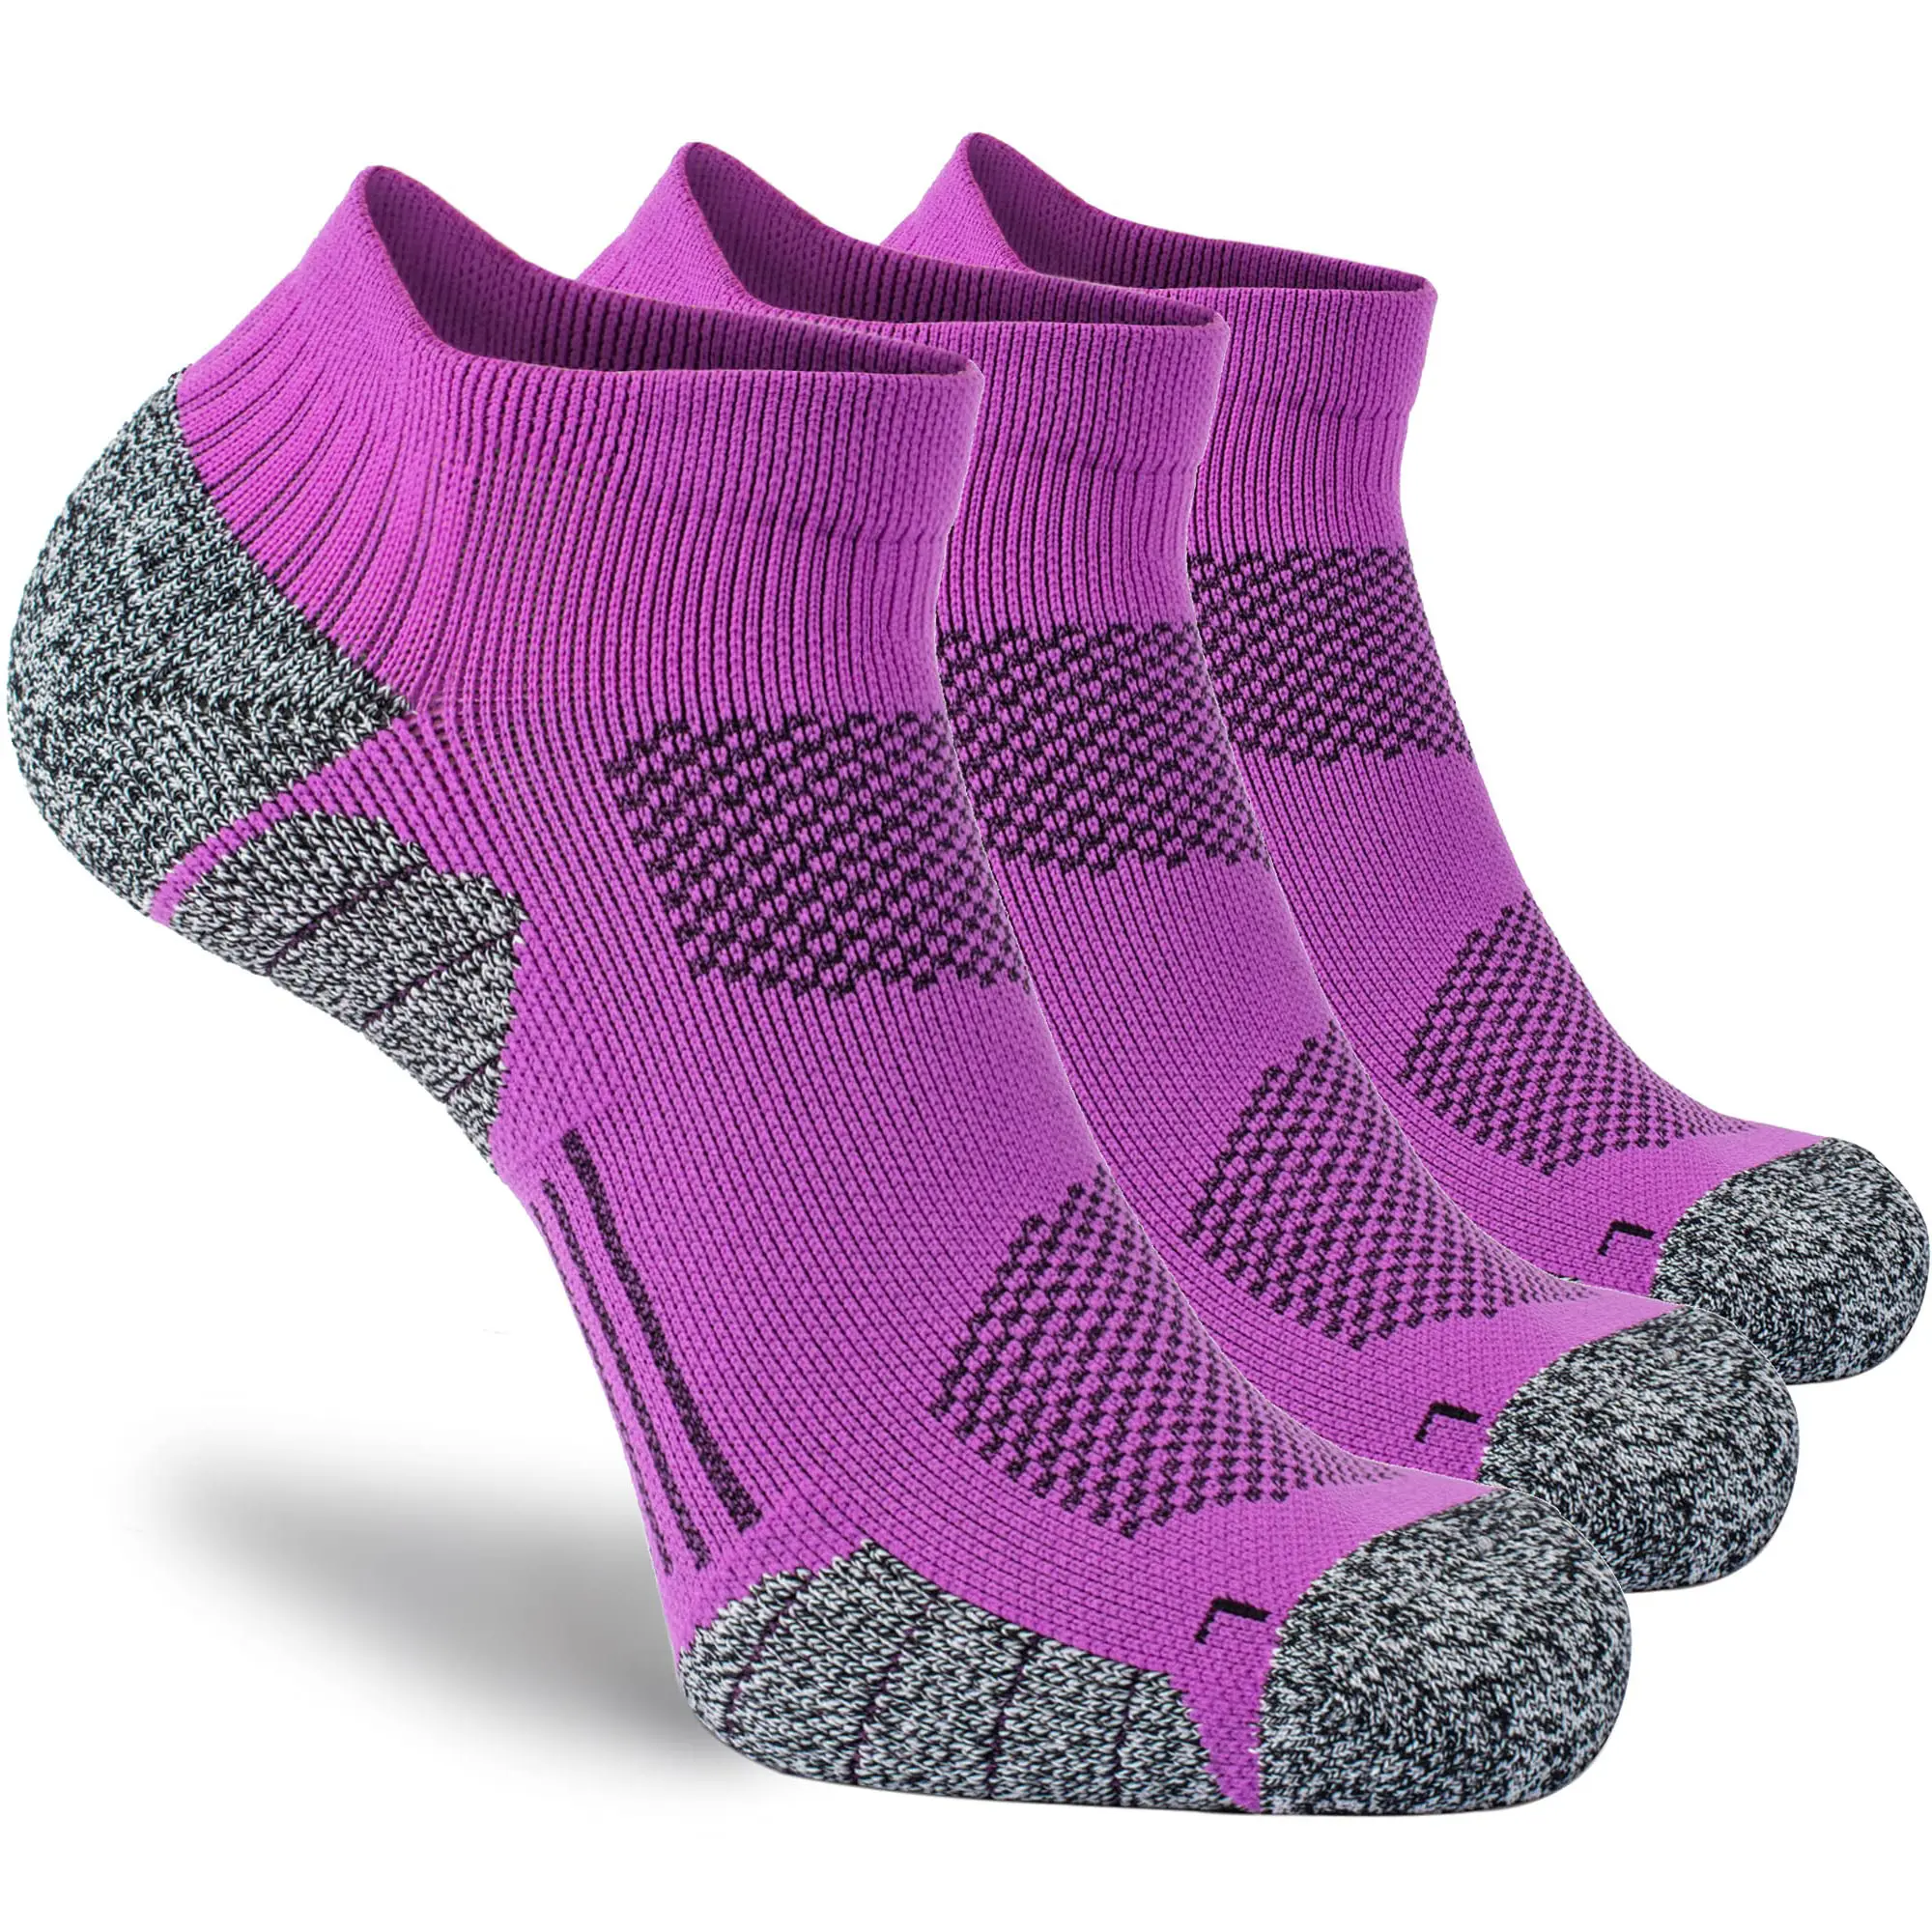 Vente en gros de chaussettes de qualité supérieure chaussettes professionnelles en coton de sport chaussettes colorées en tricot avec logo personnalisé de marque OEM fabricant